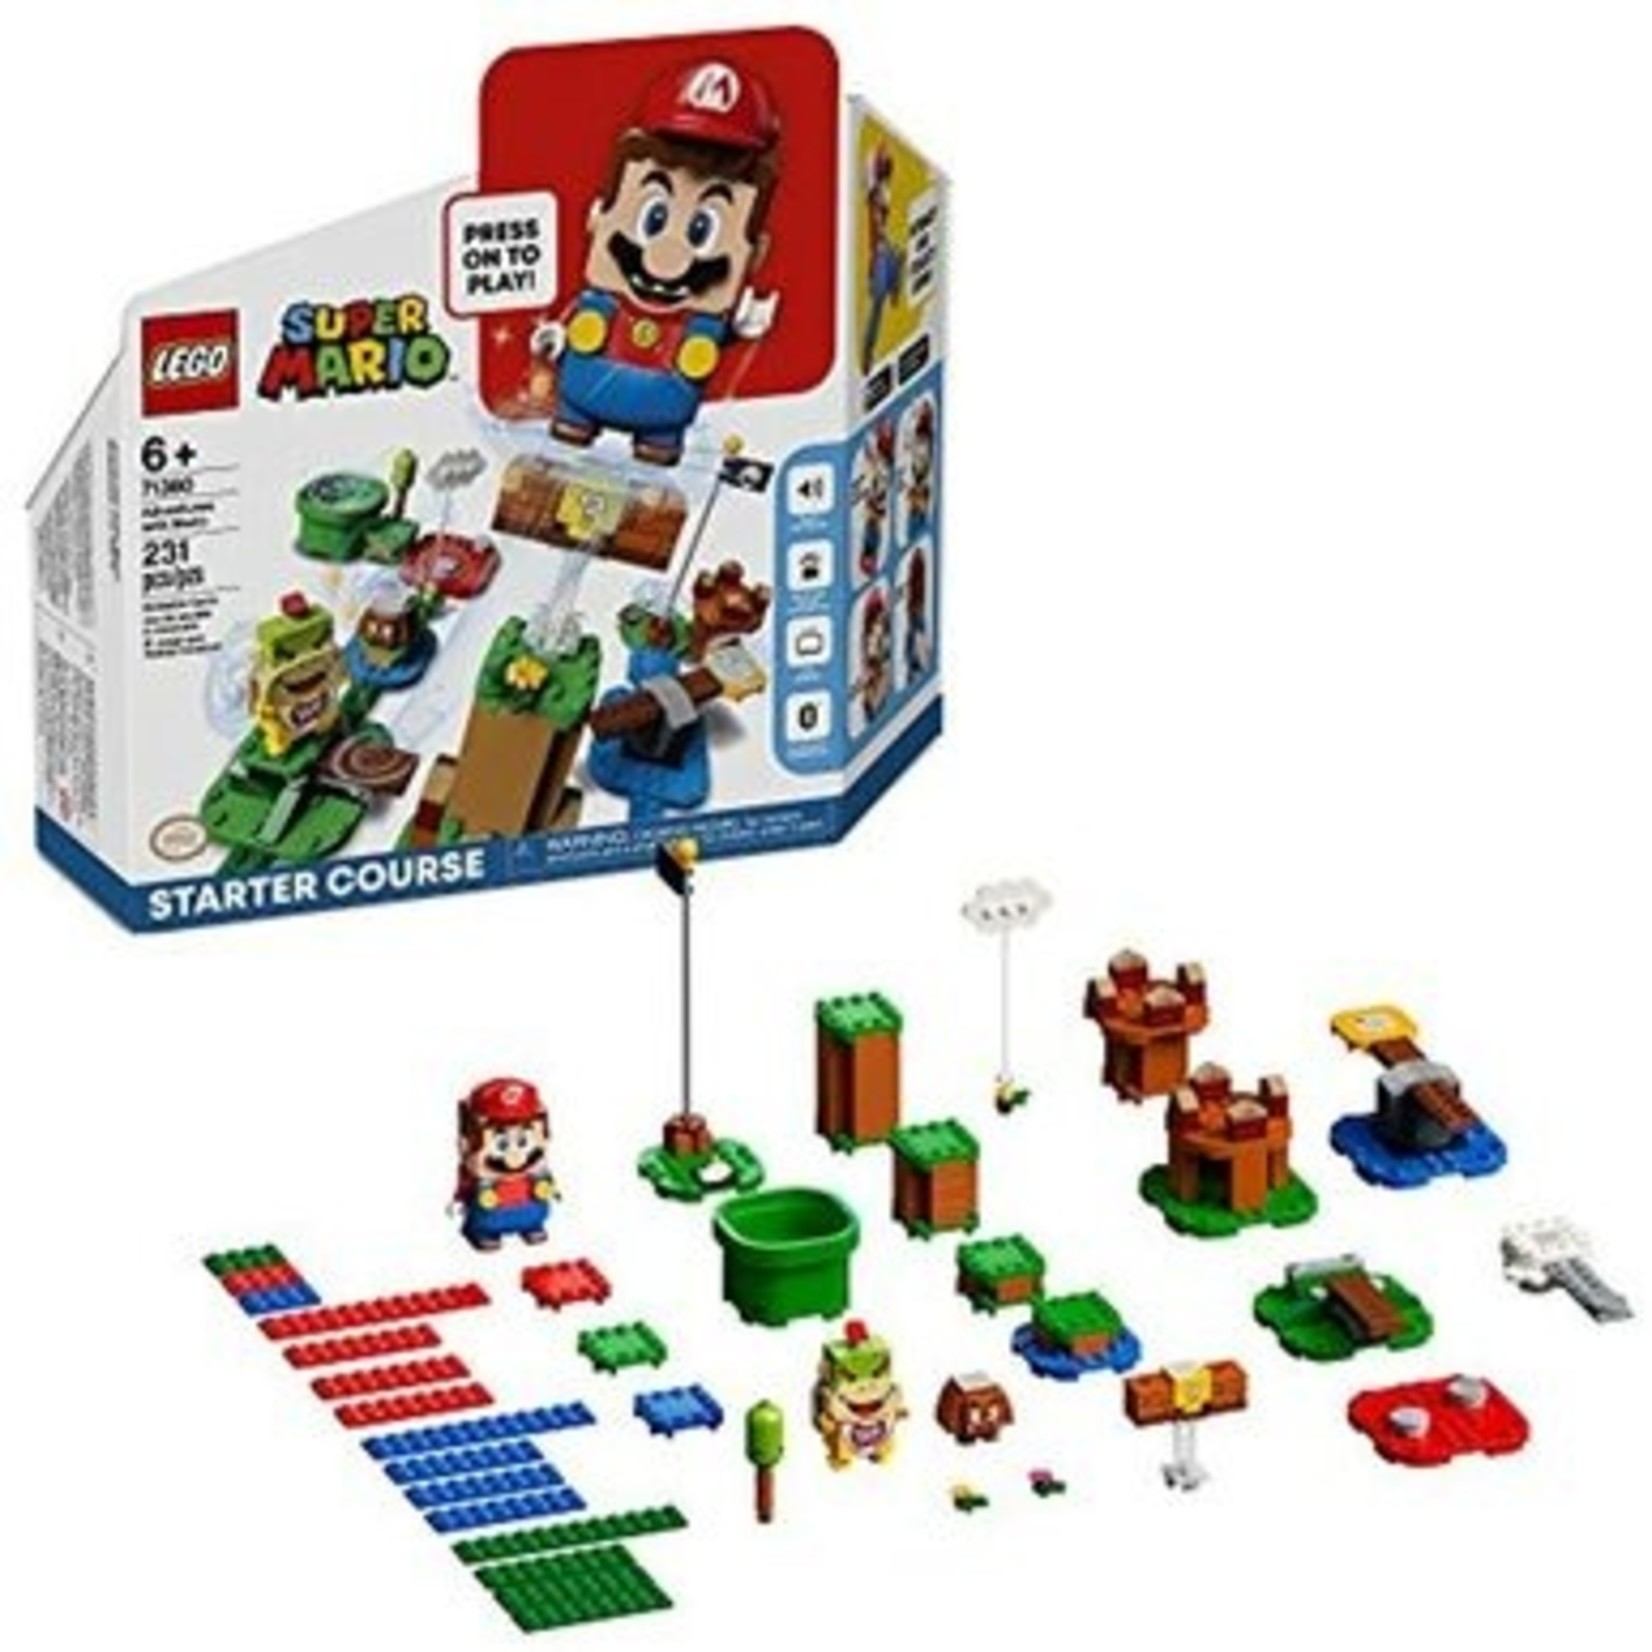 LEGO LEGO Super Mario Adventures with Mario Starter Course 71360